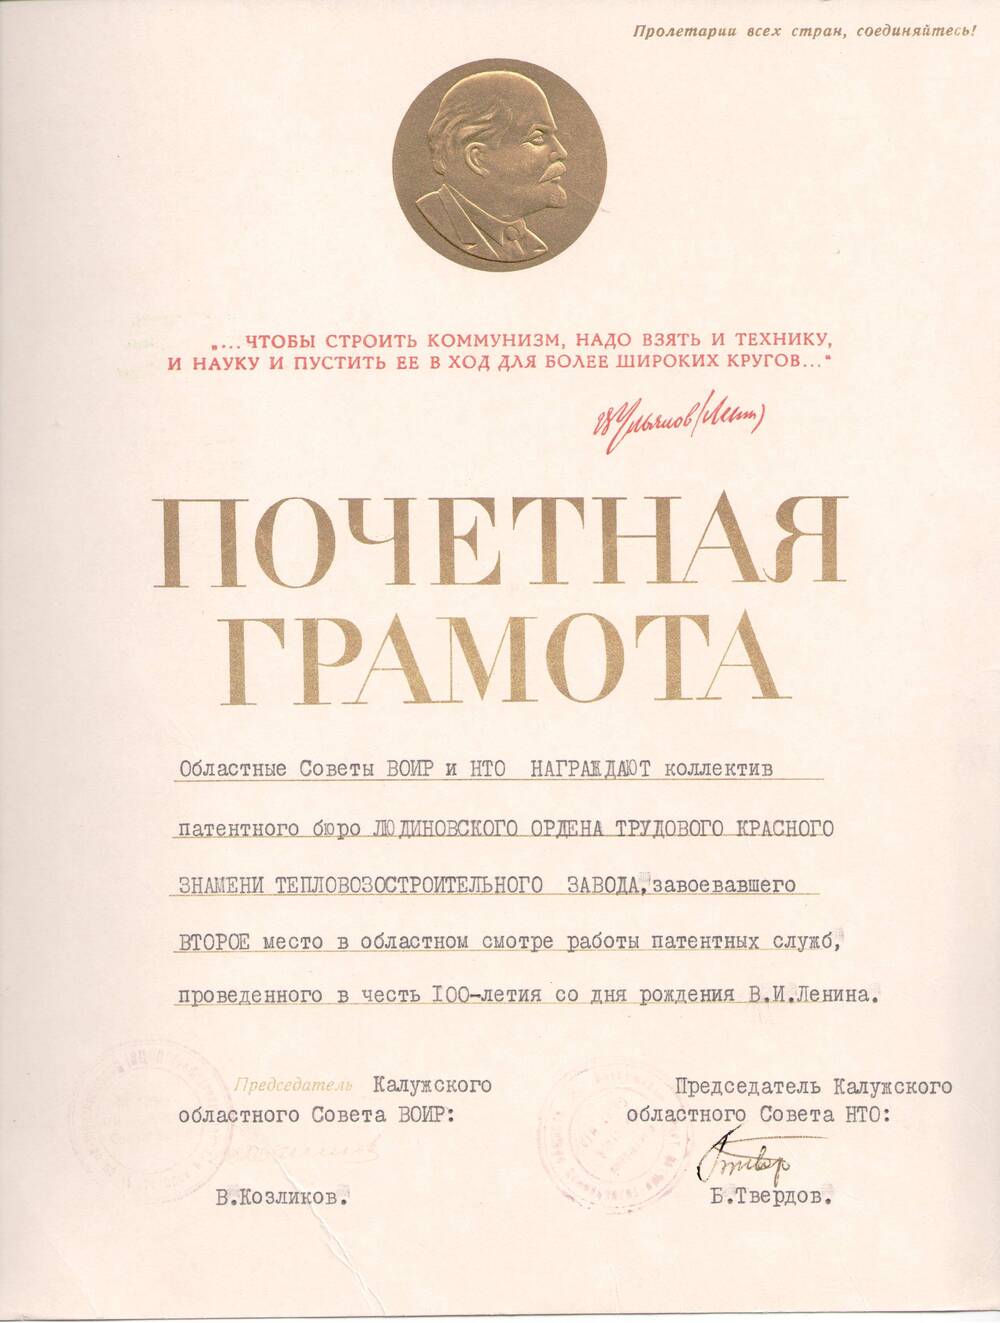 Почетная грамота Облсовета ВОИР и НТО коллективу ЛТЗ, завоевавшему 2-е место в областном смотре работы патентных служб, в часть 100 - летия со дня рождения В.И.Ленина